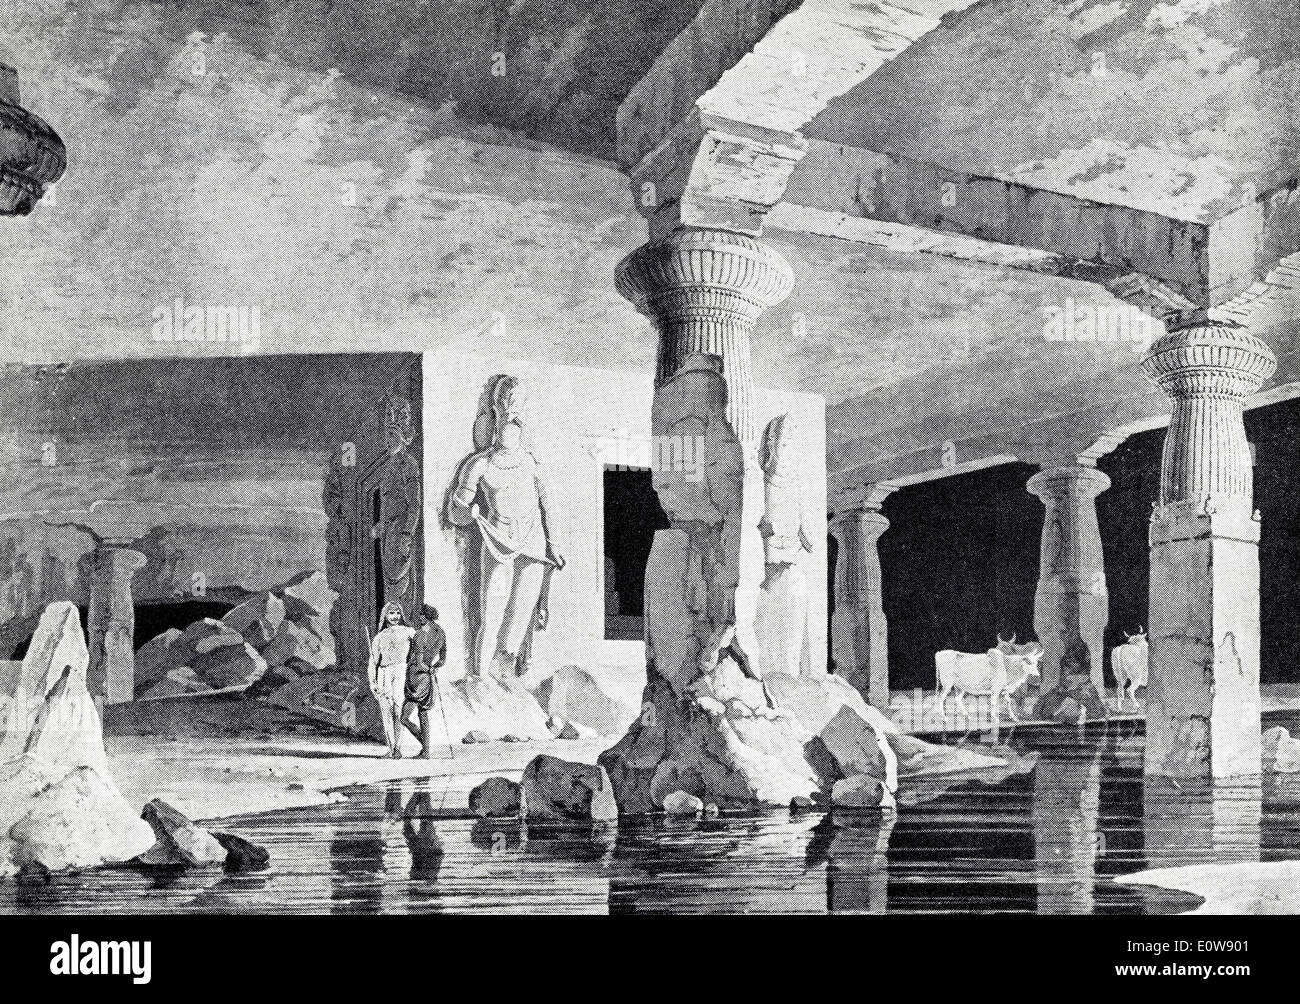 Vue de l'intérieur de grottes d'Elephanta près de Bombay par les artistes Thomas & William Daniell vers 1800 Banque D'Images